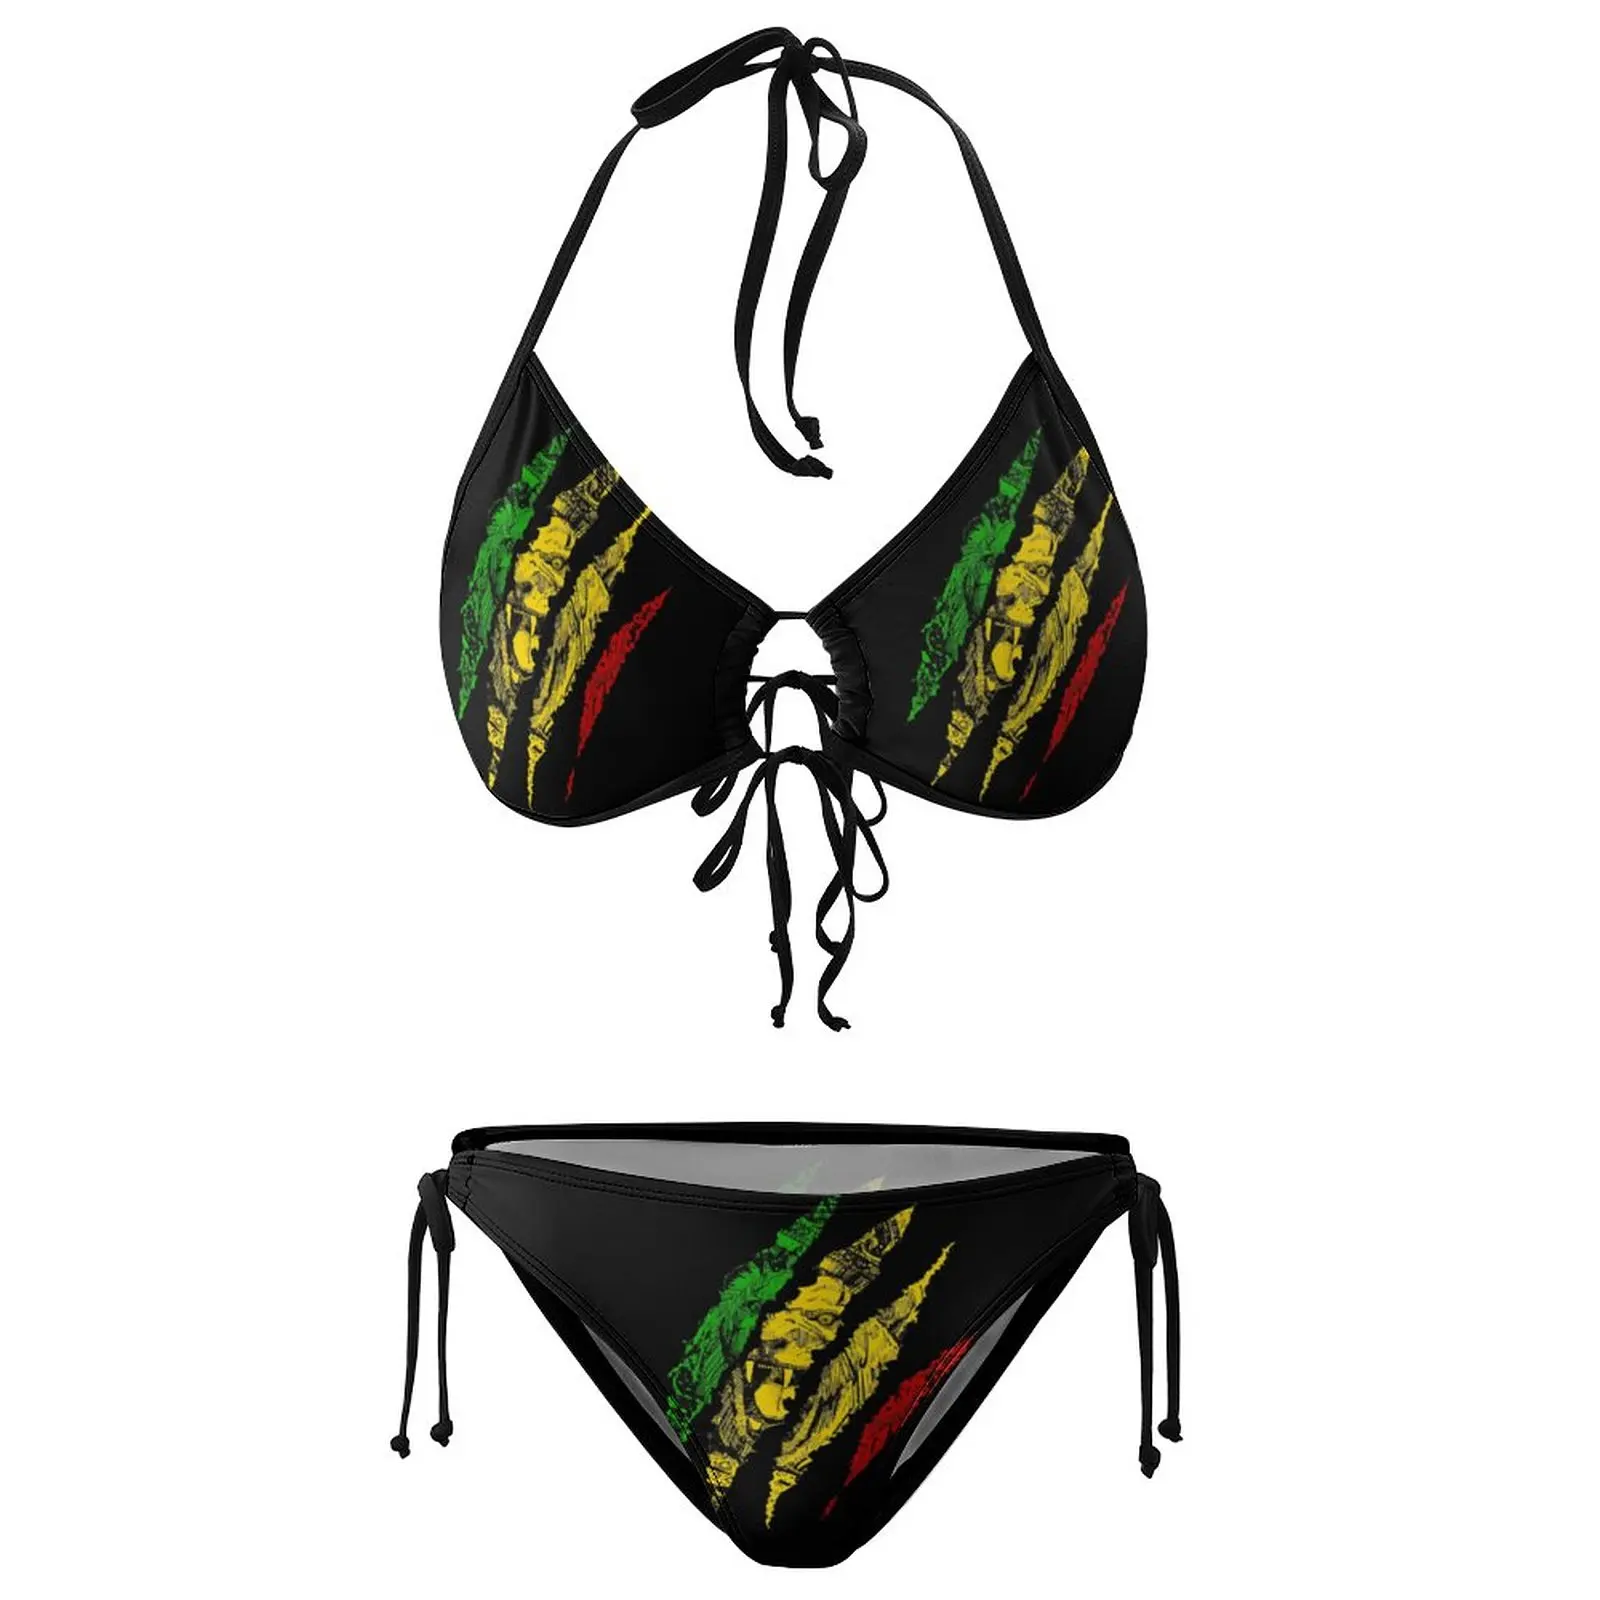 

Бикини Warrior Lion of juah King Rasta Регги, Ямайка, купальный костюм, забавный графический сексуальный бикини, Забавный саркастический купальник